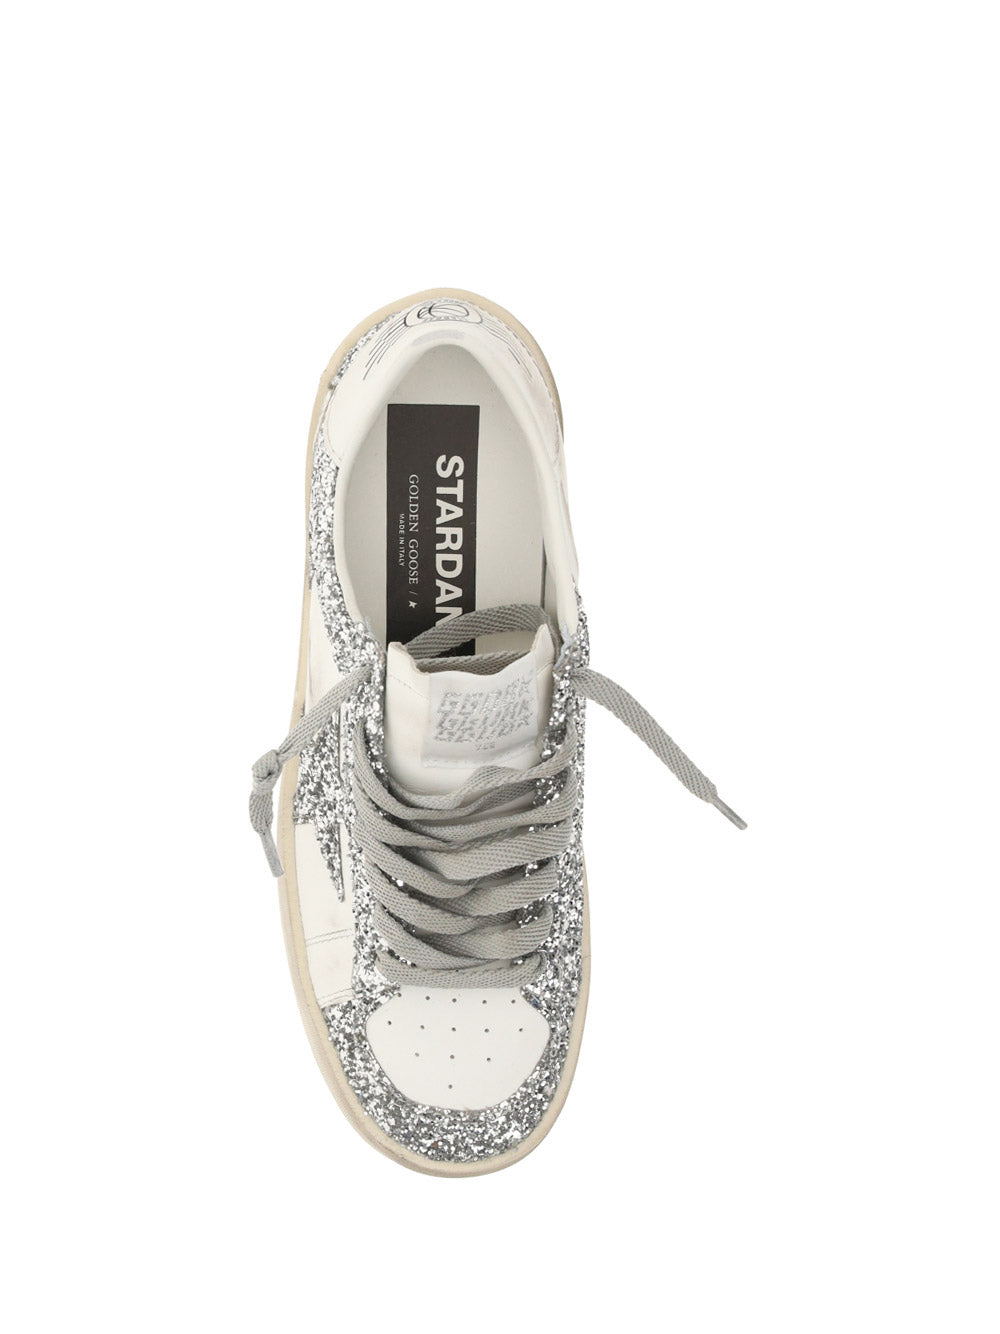 Stardan Sneakers - White / Glitter